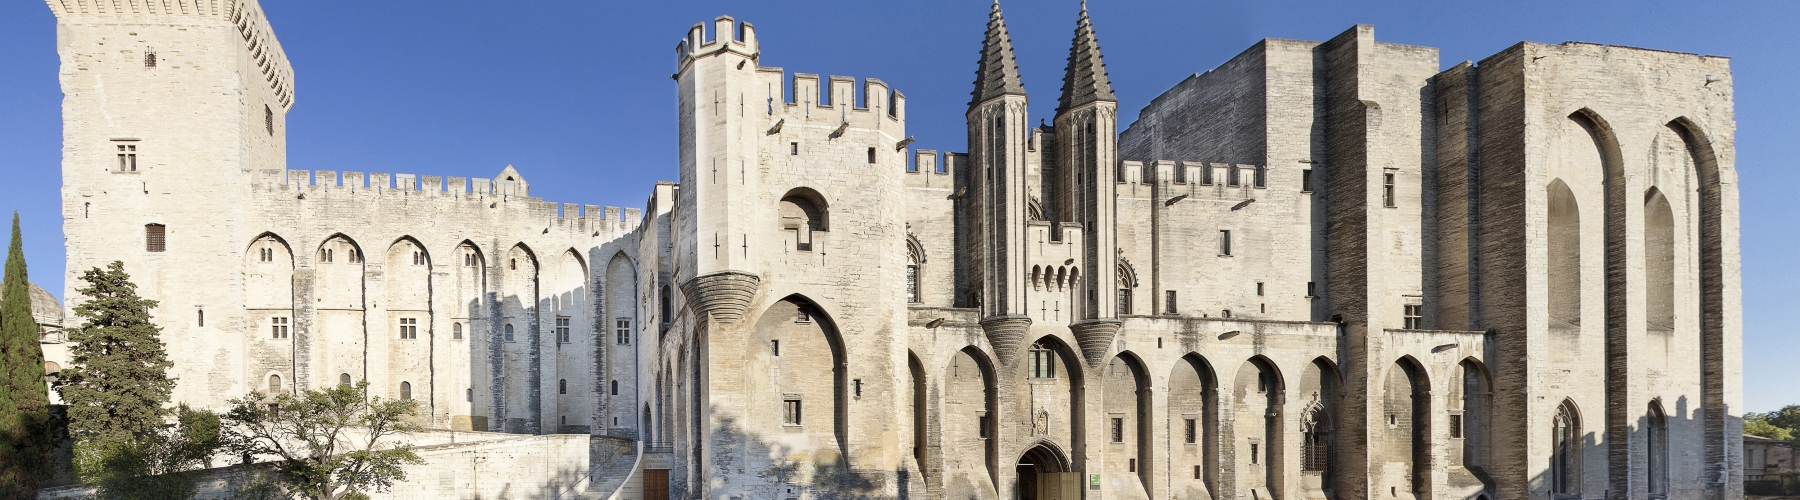 Séminaire Avignon - Soirée insolite au Palais